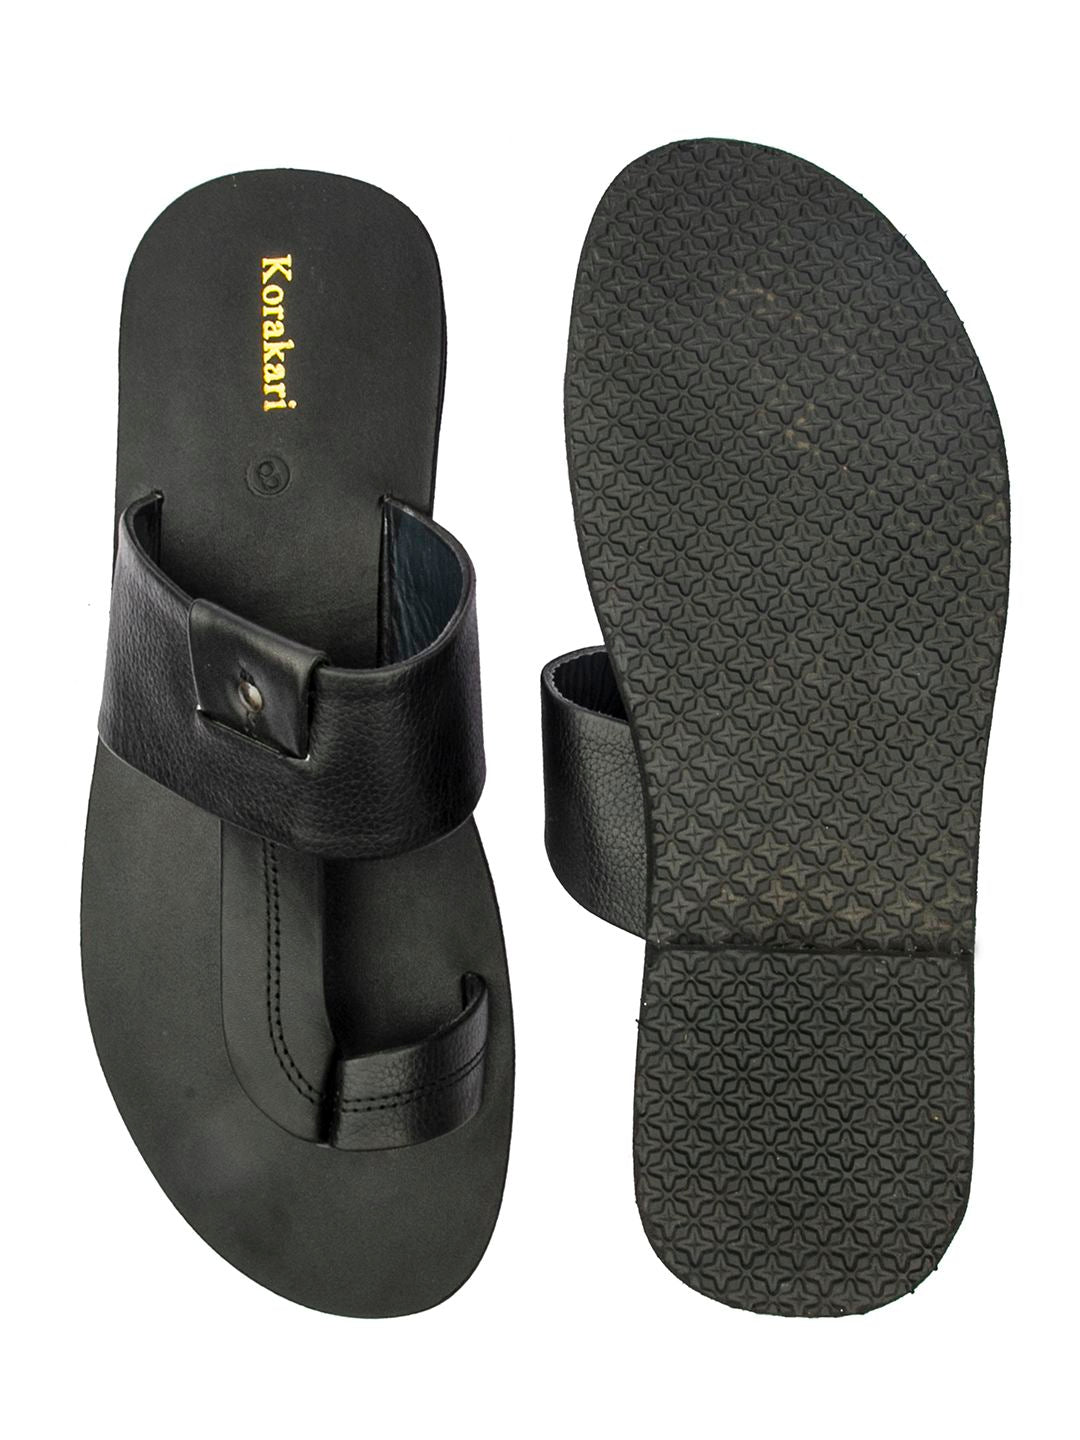 Ultimate Comfort: Handmade Black Leather Sandals for Men